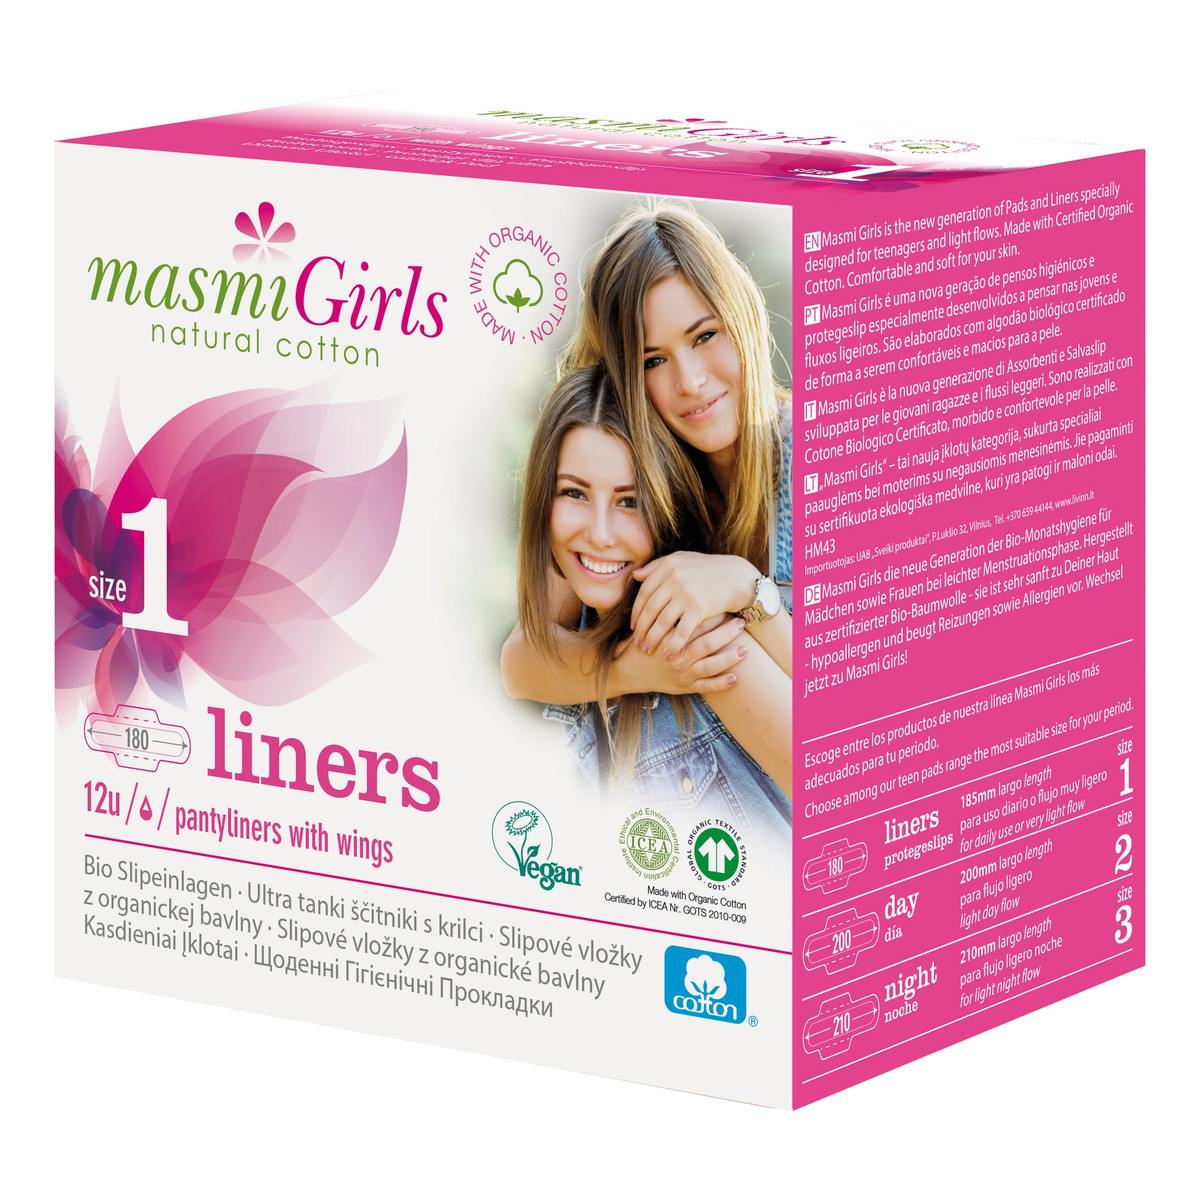 MASMI Girls wkładki higieniczne 100% bawełny organicznej 12 szt